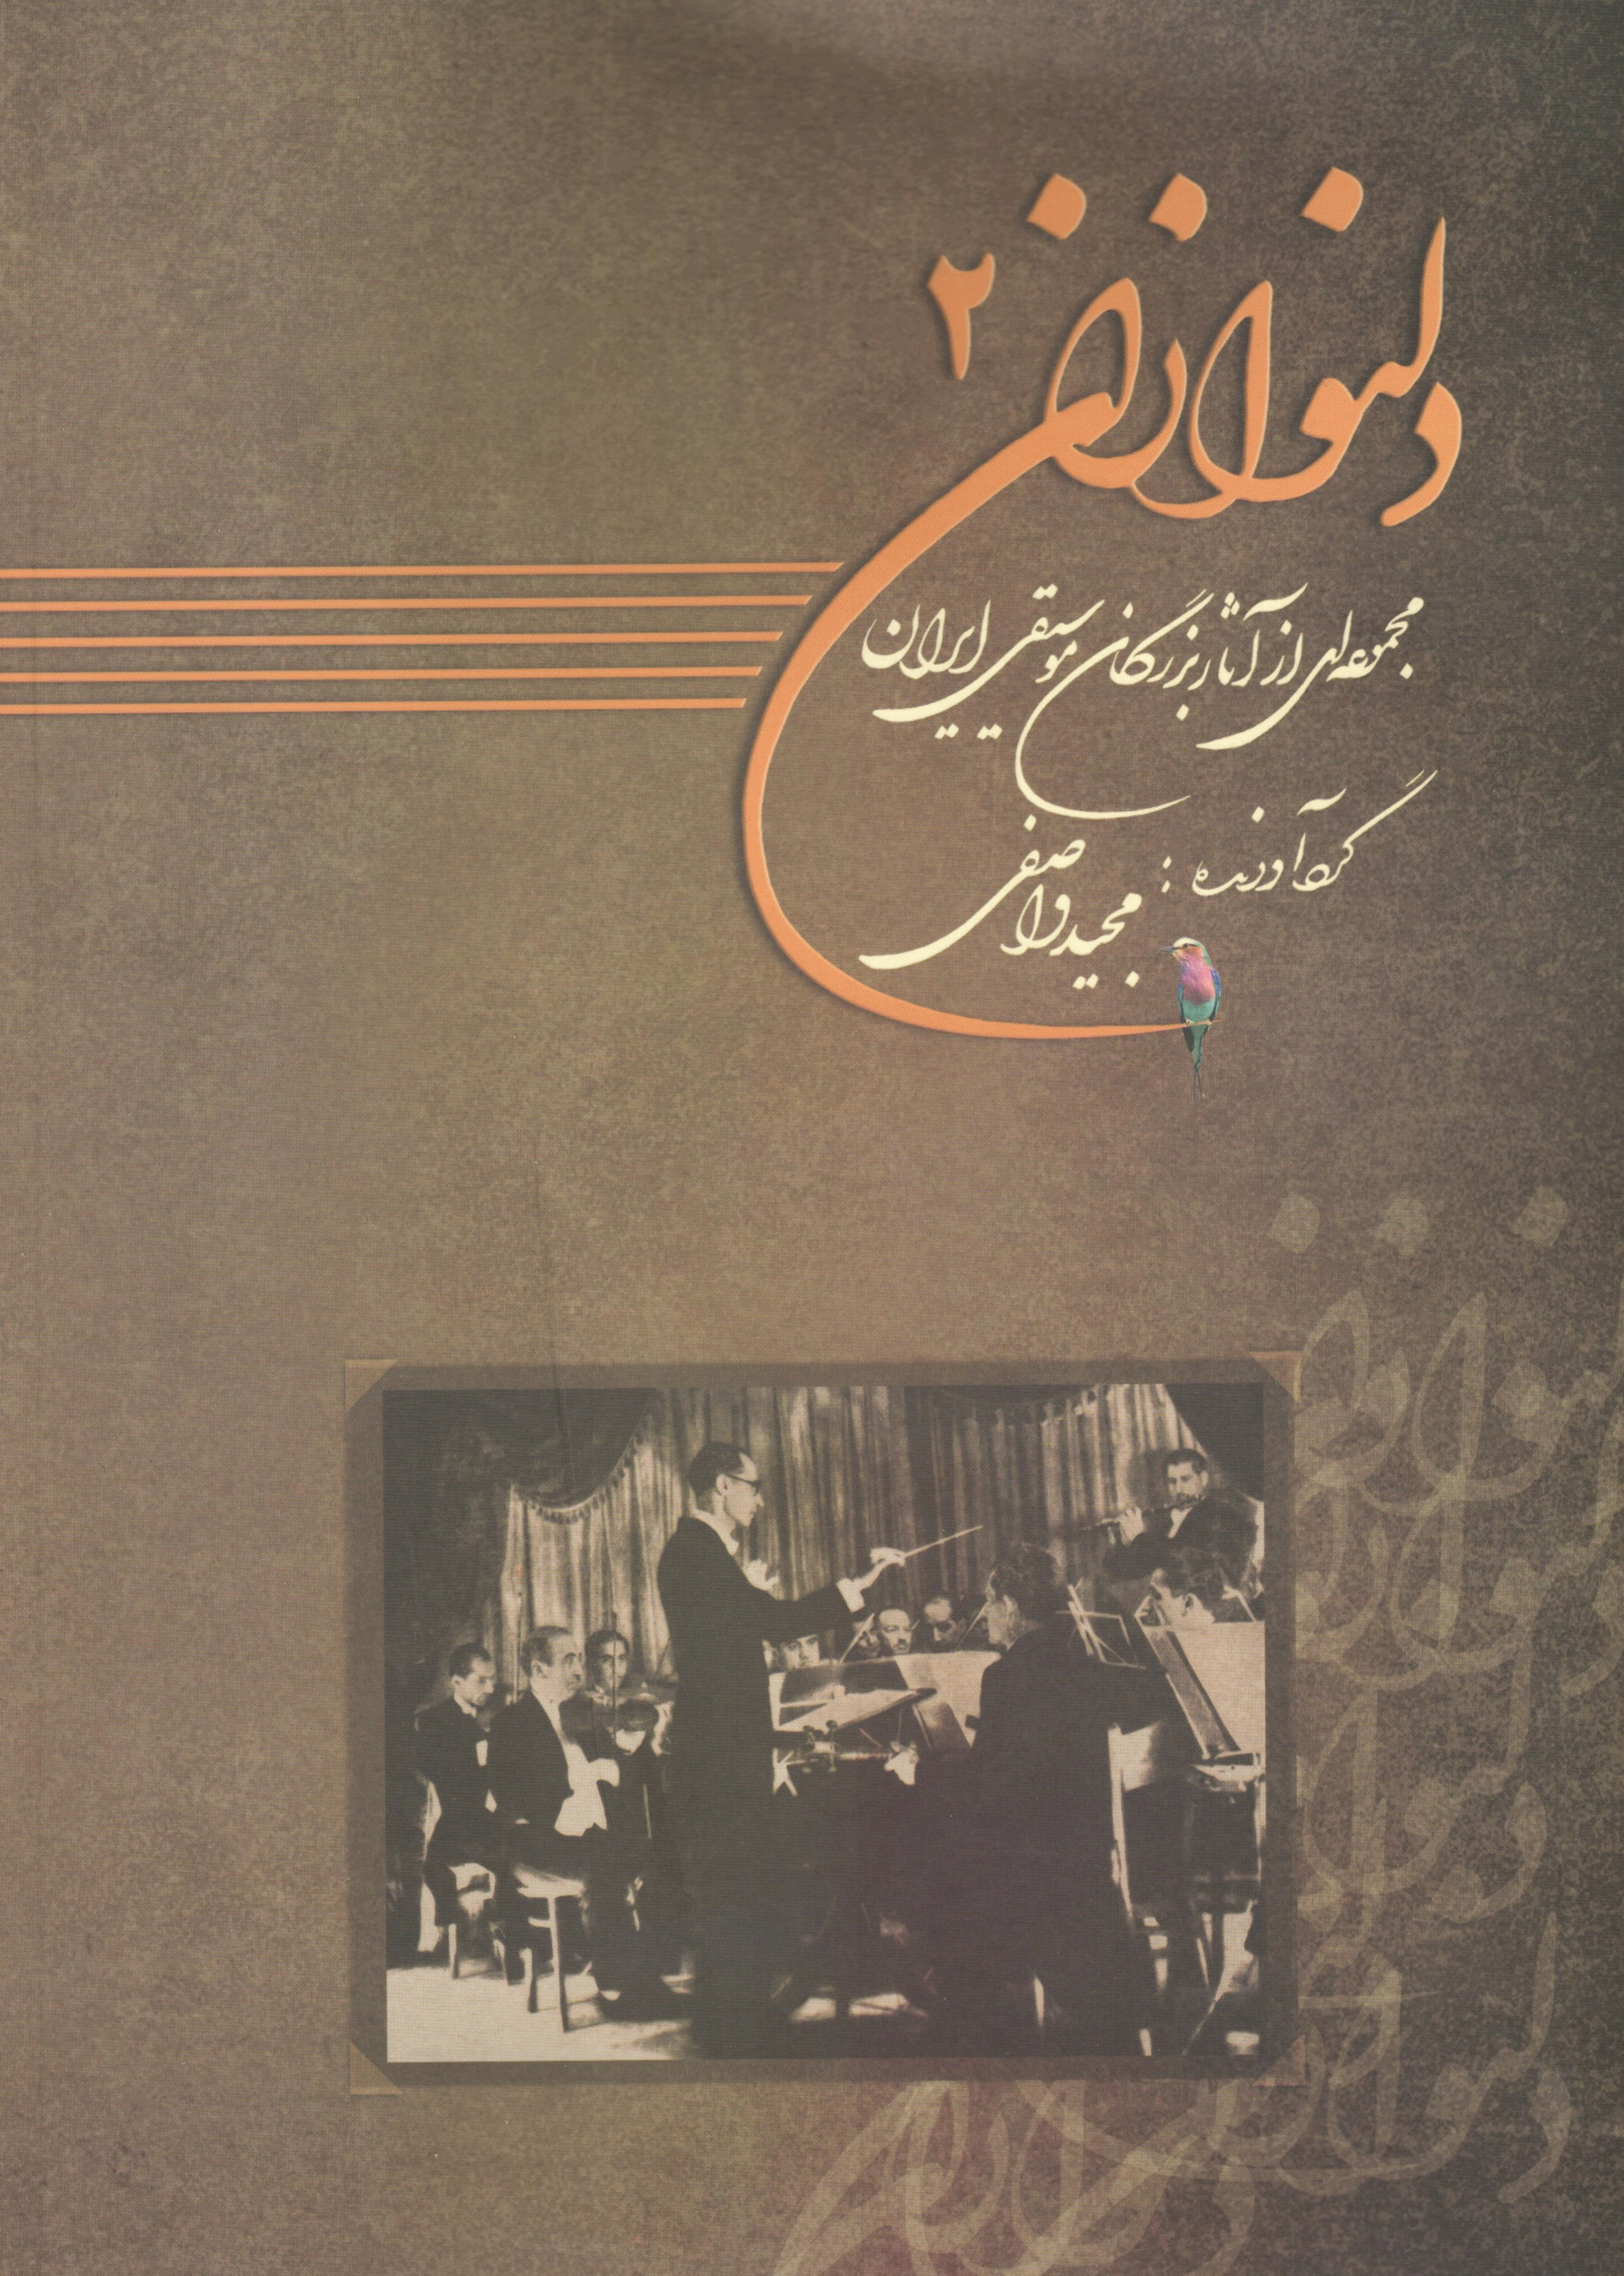 دلنوازان 2 (مجموعه آثار بزرگان موسیقی ایران)همراه با لوح فشرده / مجید واصفی